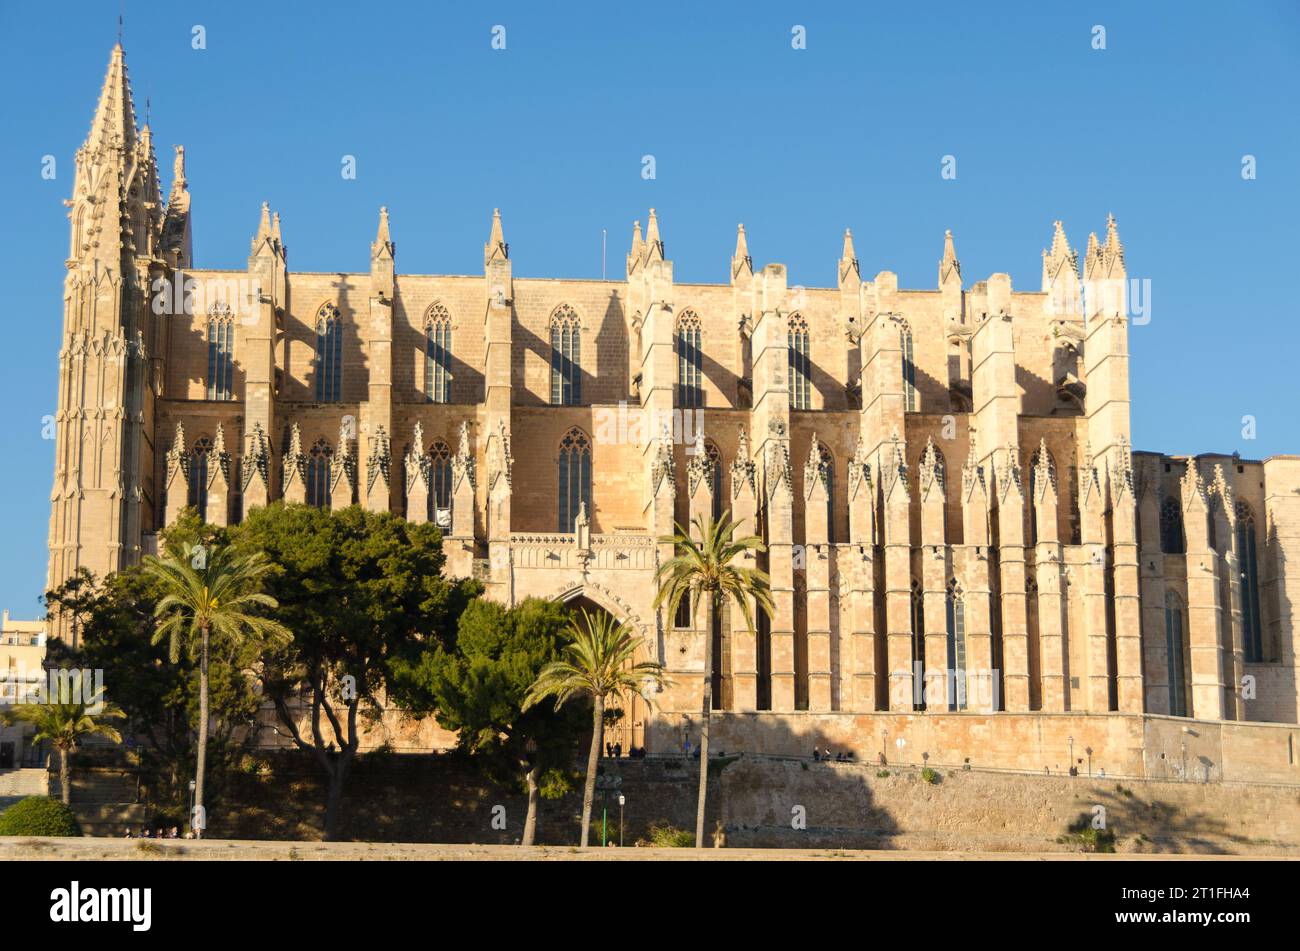 Mallorca's Architecture, Spain Stock Photo